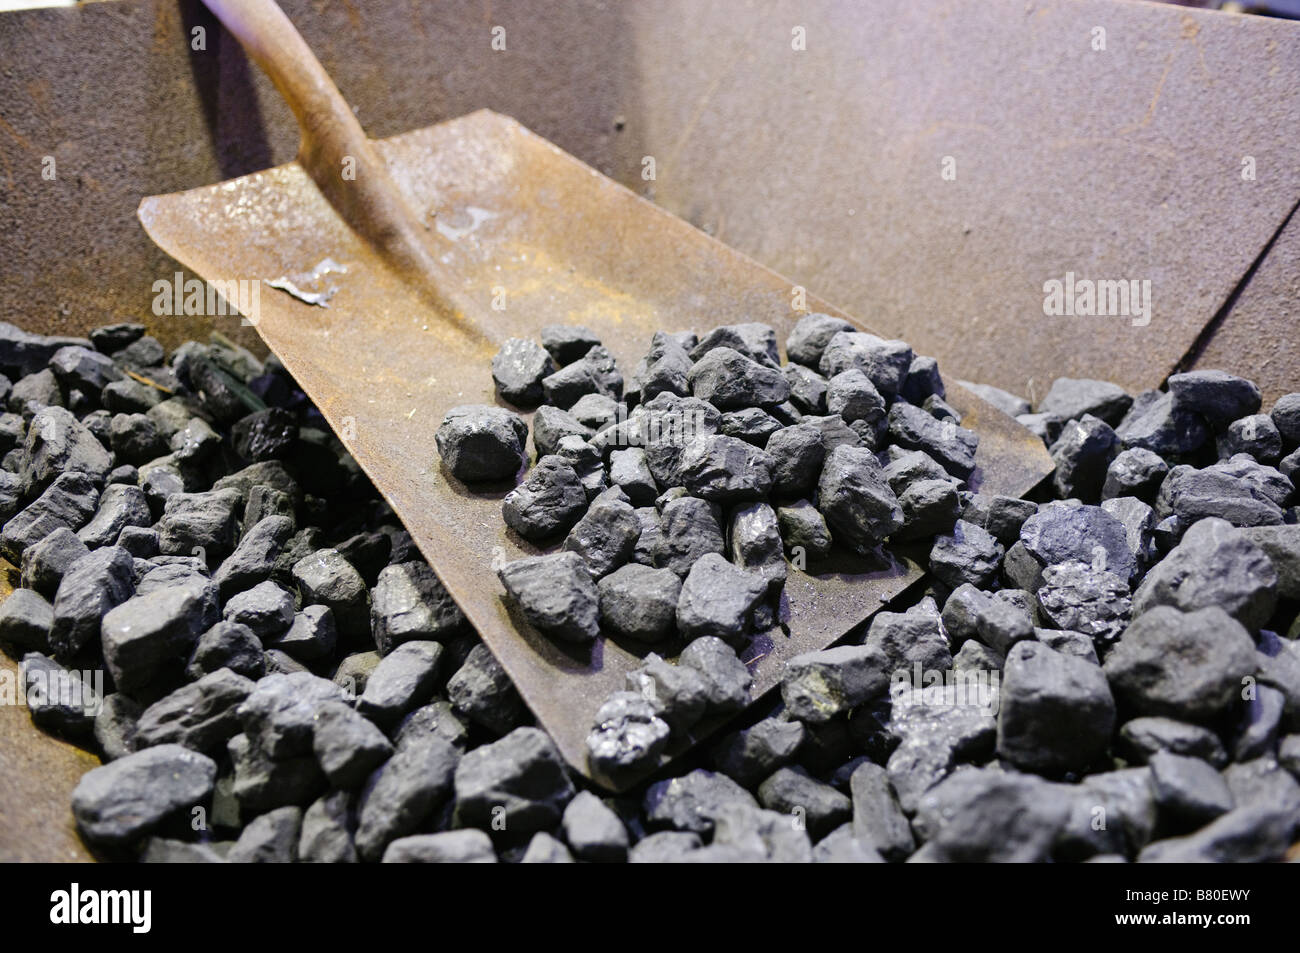 Shovel and coal in a wheelbarrow Stock Photo